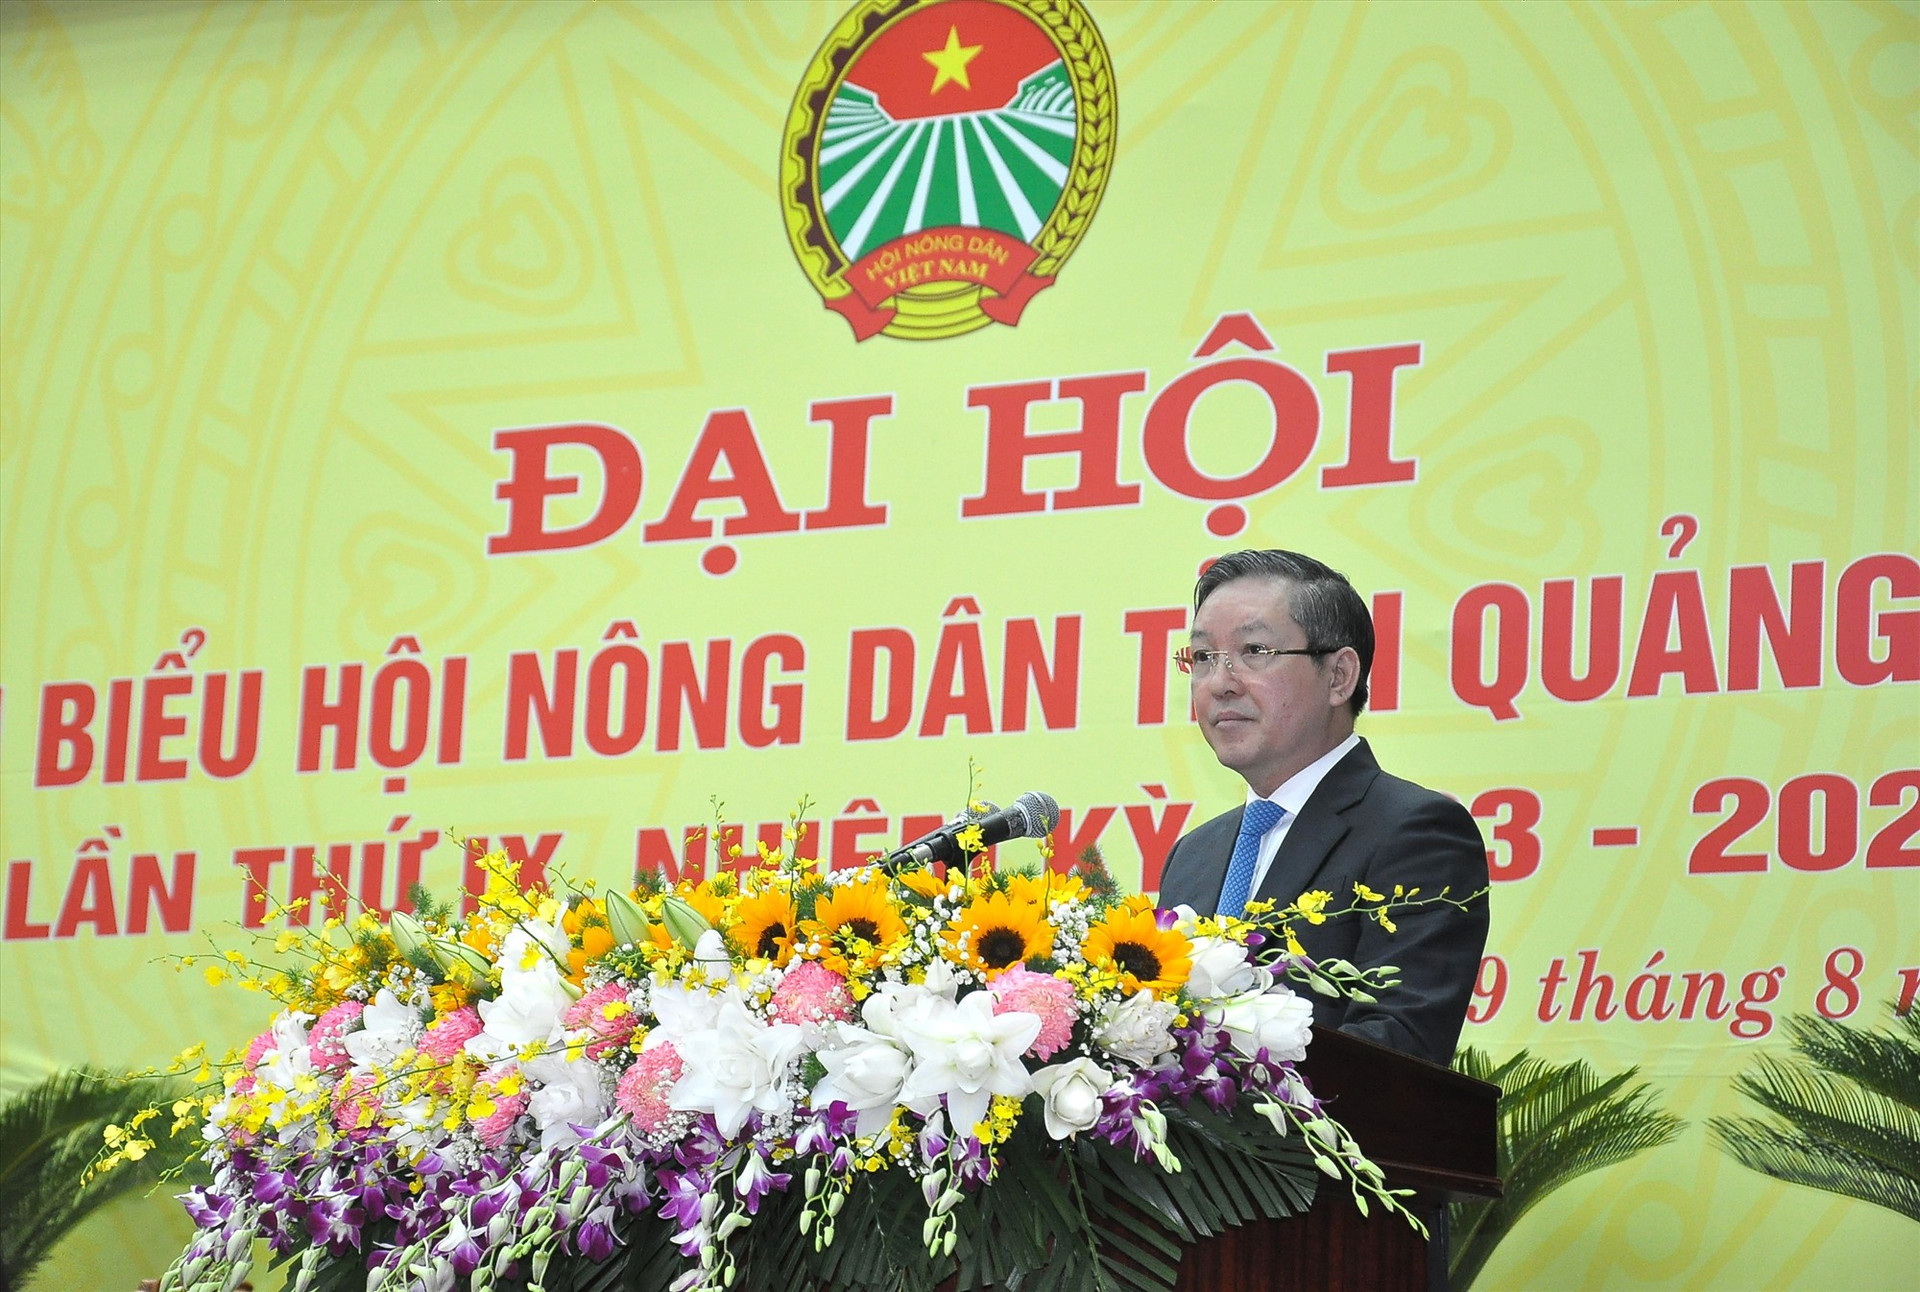 Ông Lương Quốc Đoàn - Ủy viên Trung ương Đảng, Chủ tịch Trung ương HND Việt Nam phát biểu tại đại hội.   Ảnh: PV